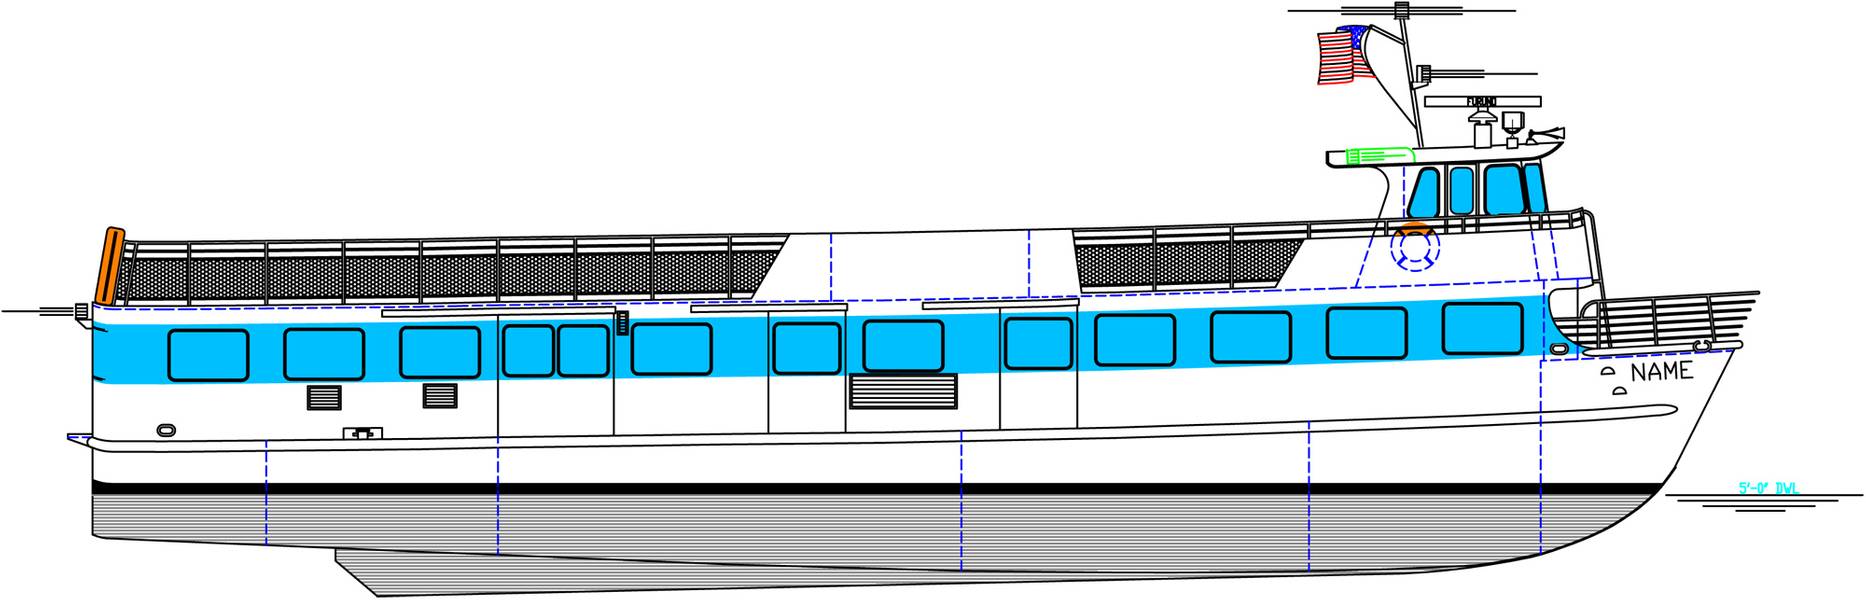 Паромный корабль «Блаунт» на высоте 85 футов будет построен для паромов на острове Файр. (Изображение: Blount Boats)